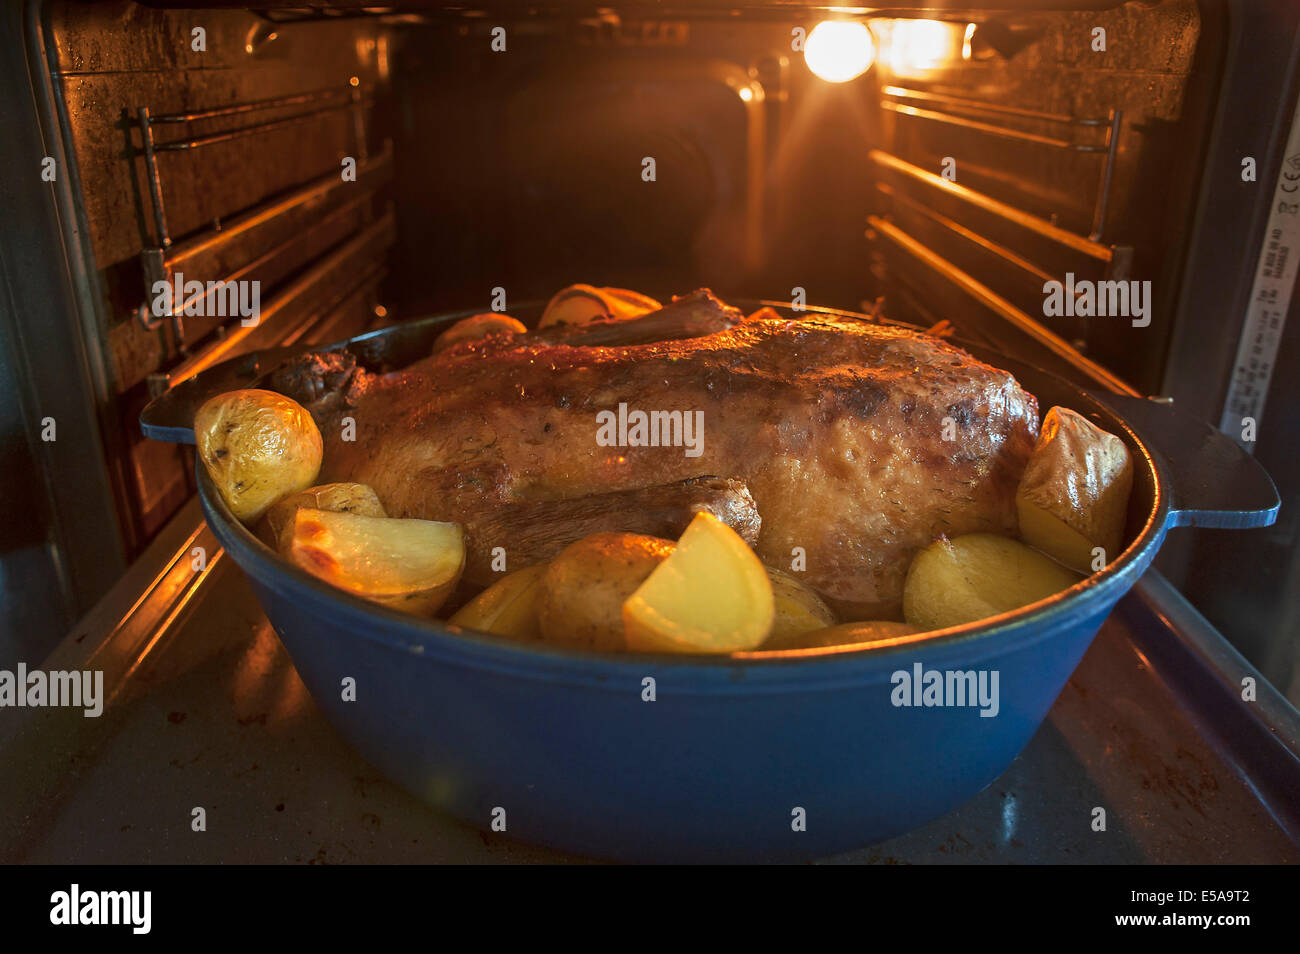 Canard rôti avec des pommes de terre dans une rôtissoire au four Banque D'Images